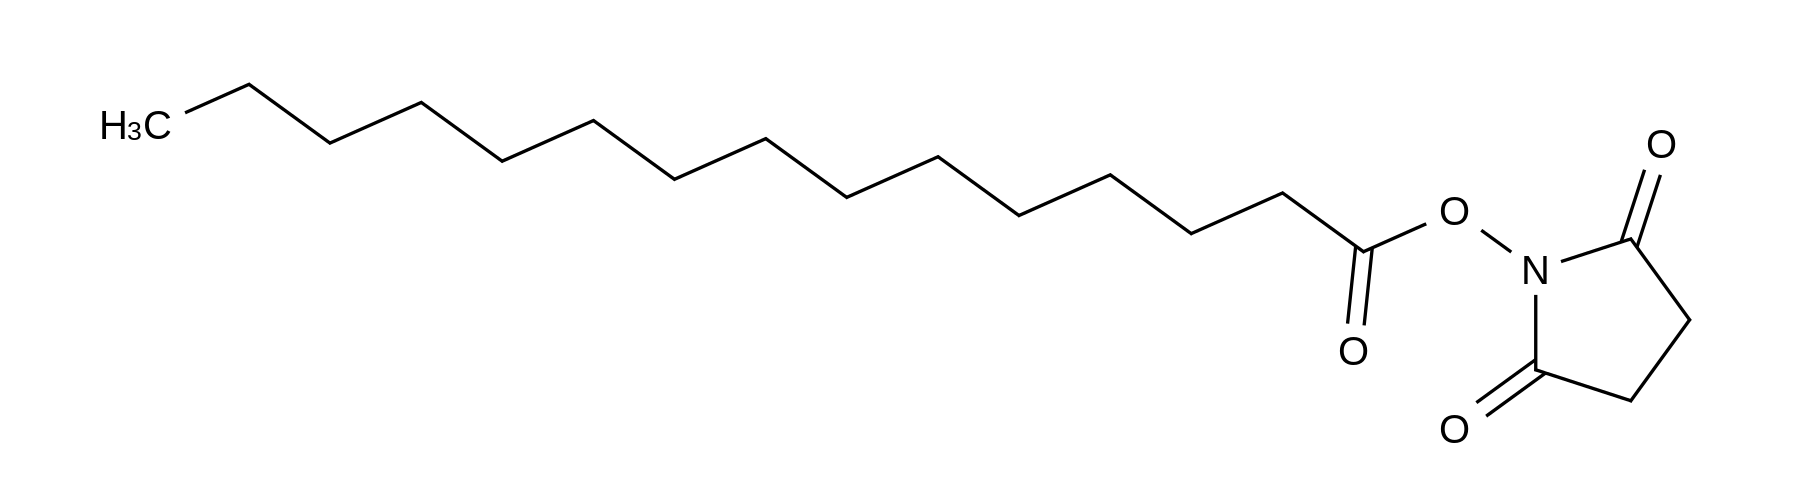 Pentadecanoic Acid N-Hydroxysuccinimide Ester